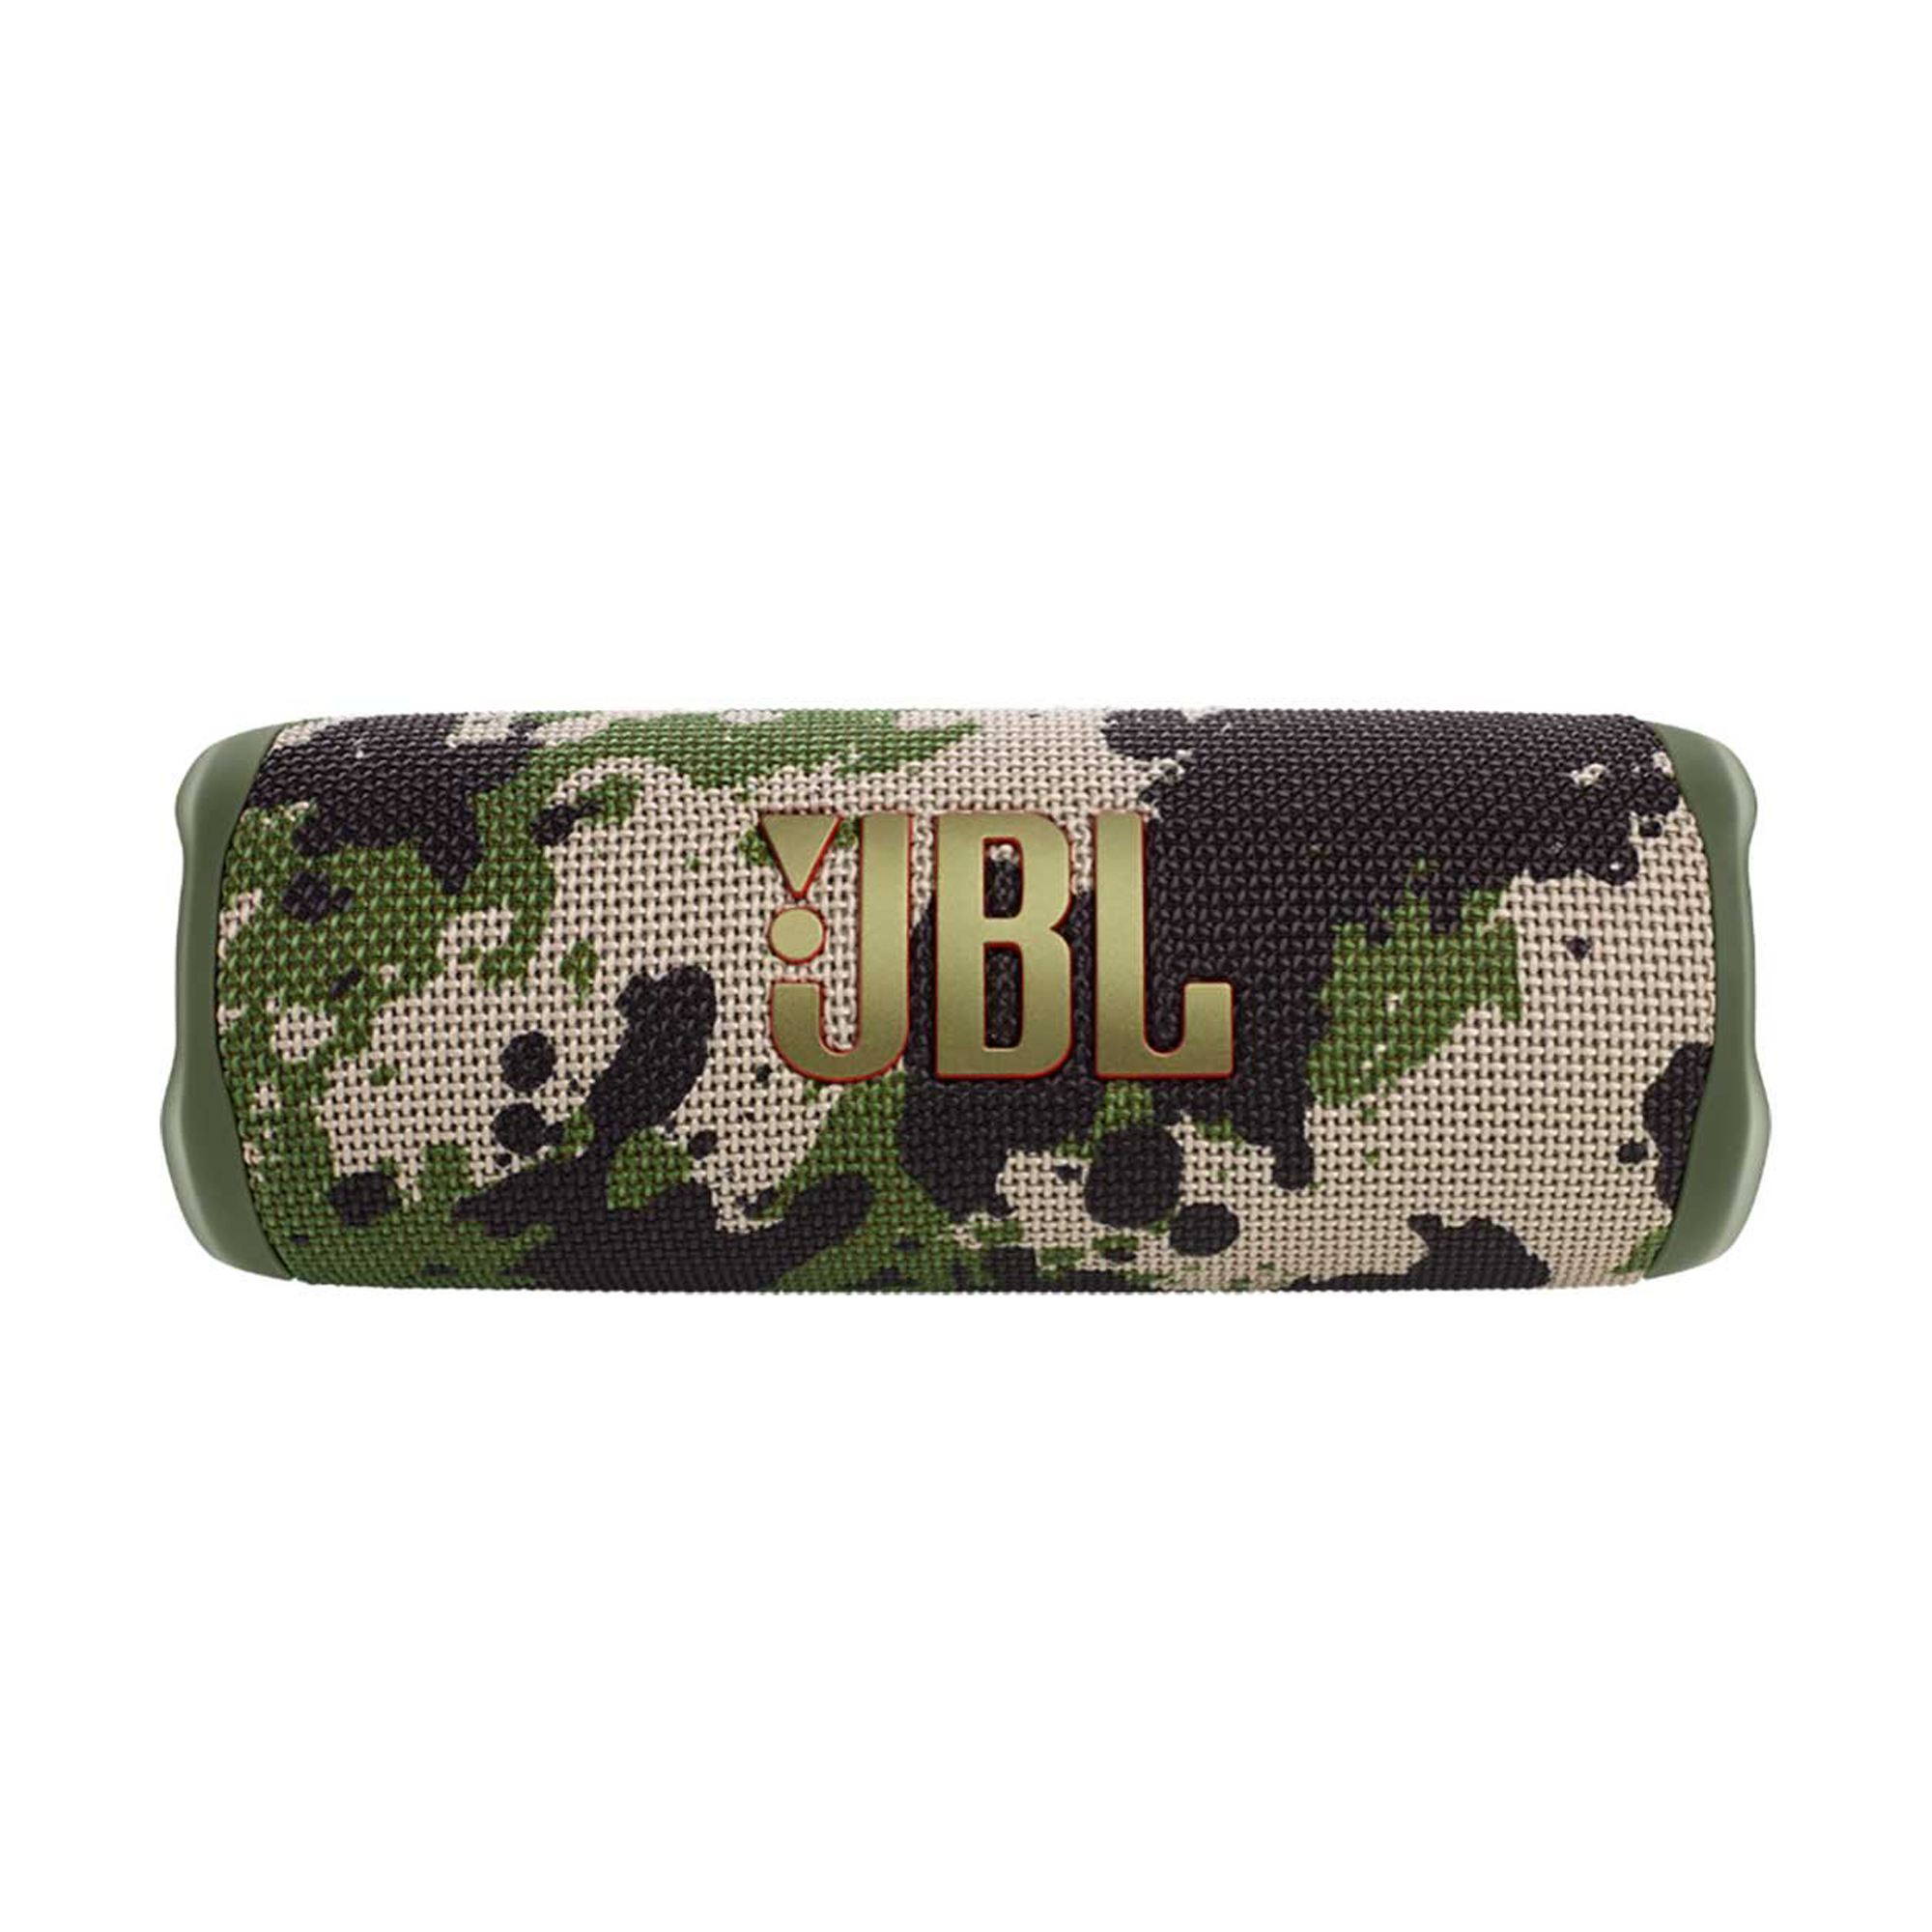 JBL FLIP 6 Présentation de Bluetooth imperméable portable